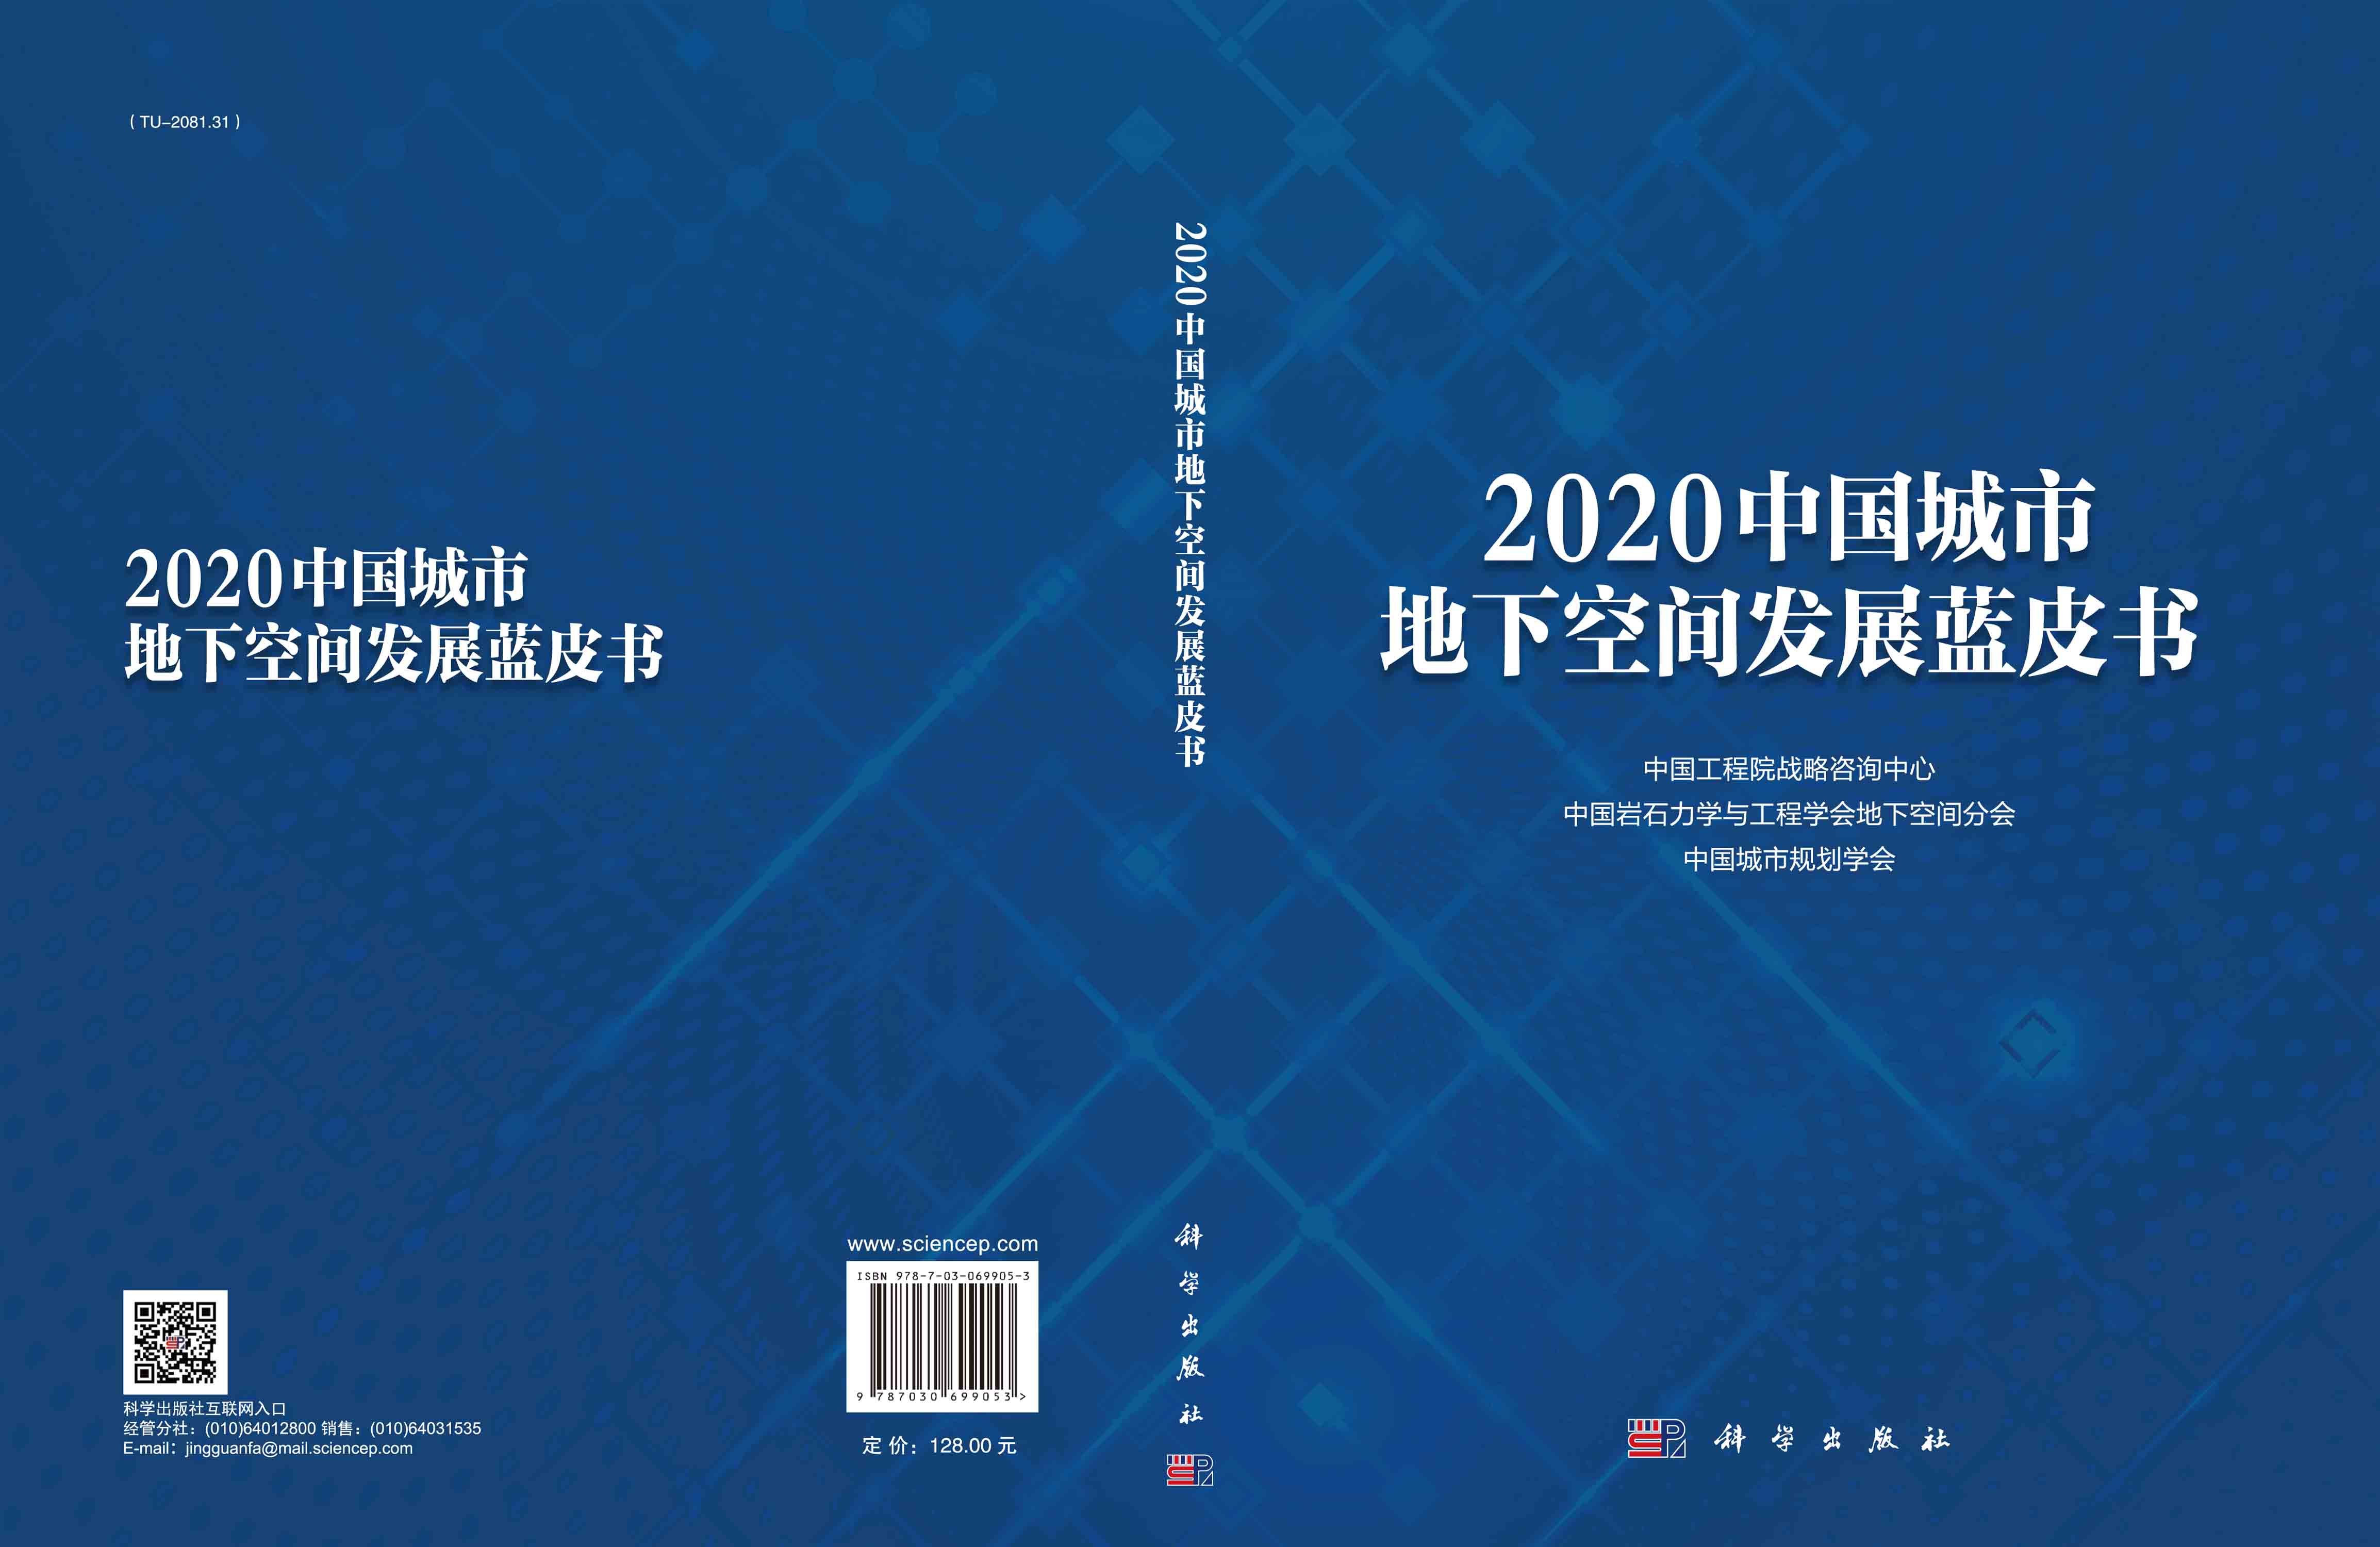 2020中国城市地下空间发展蓝皮书